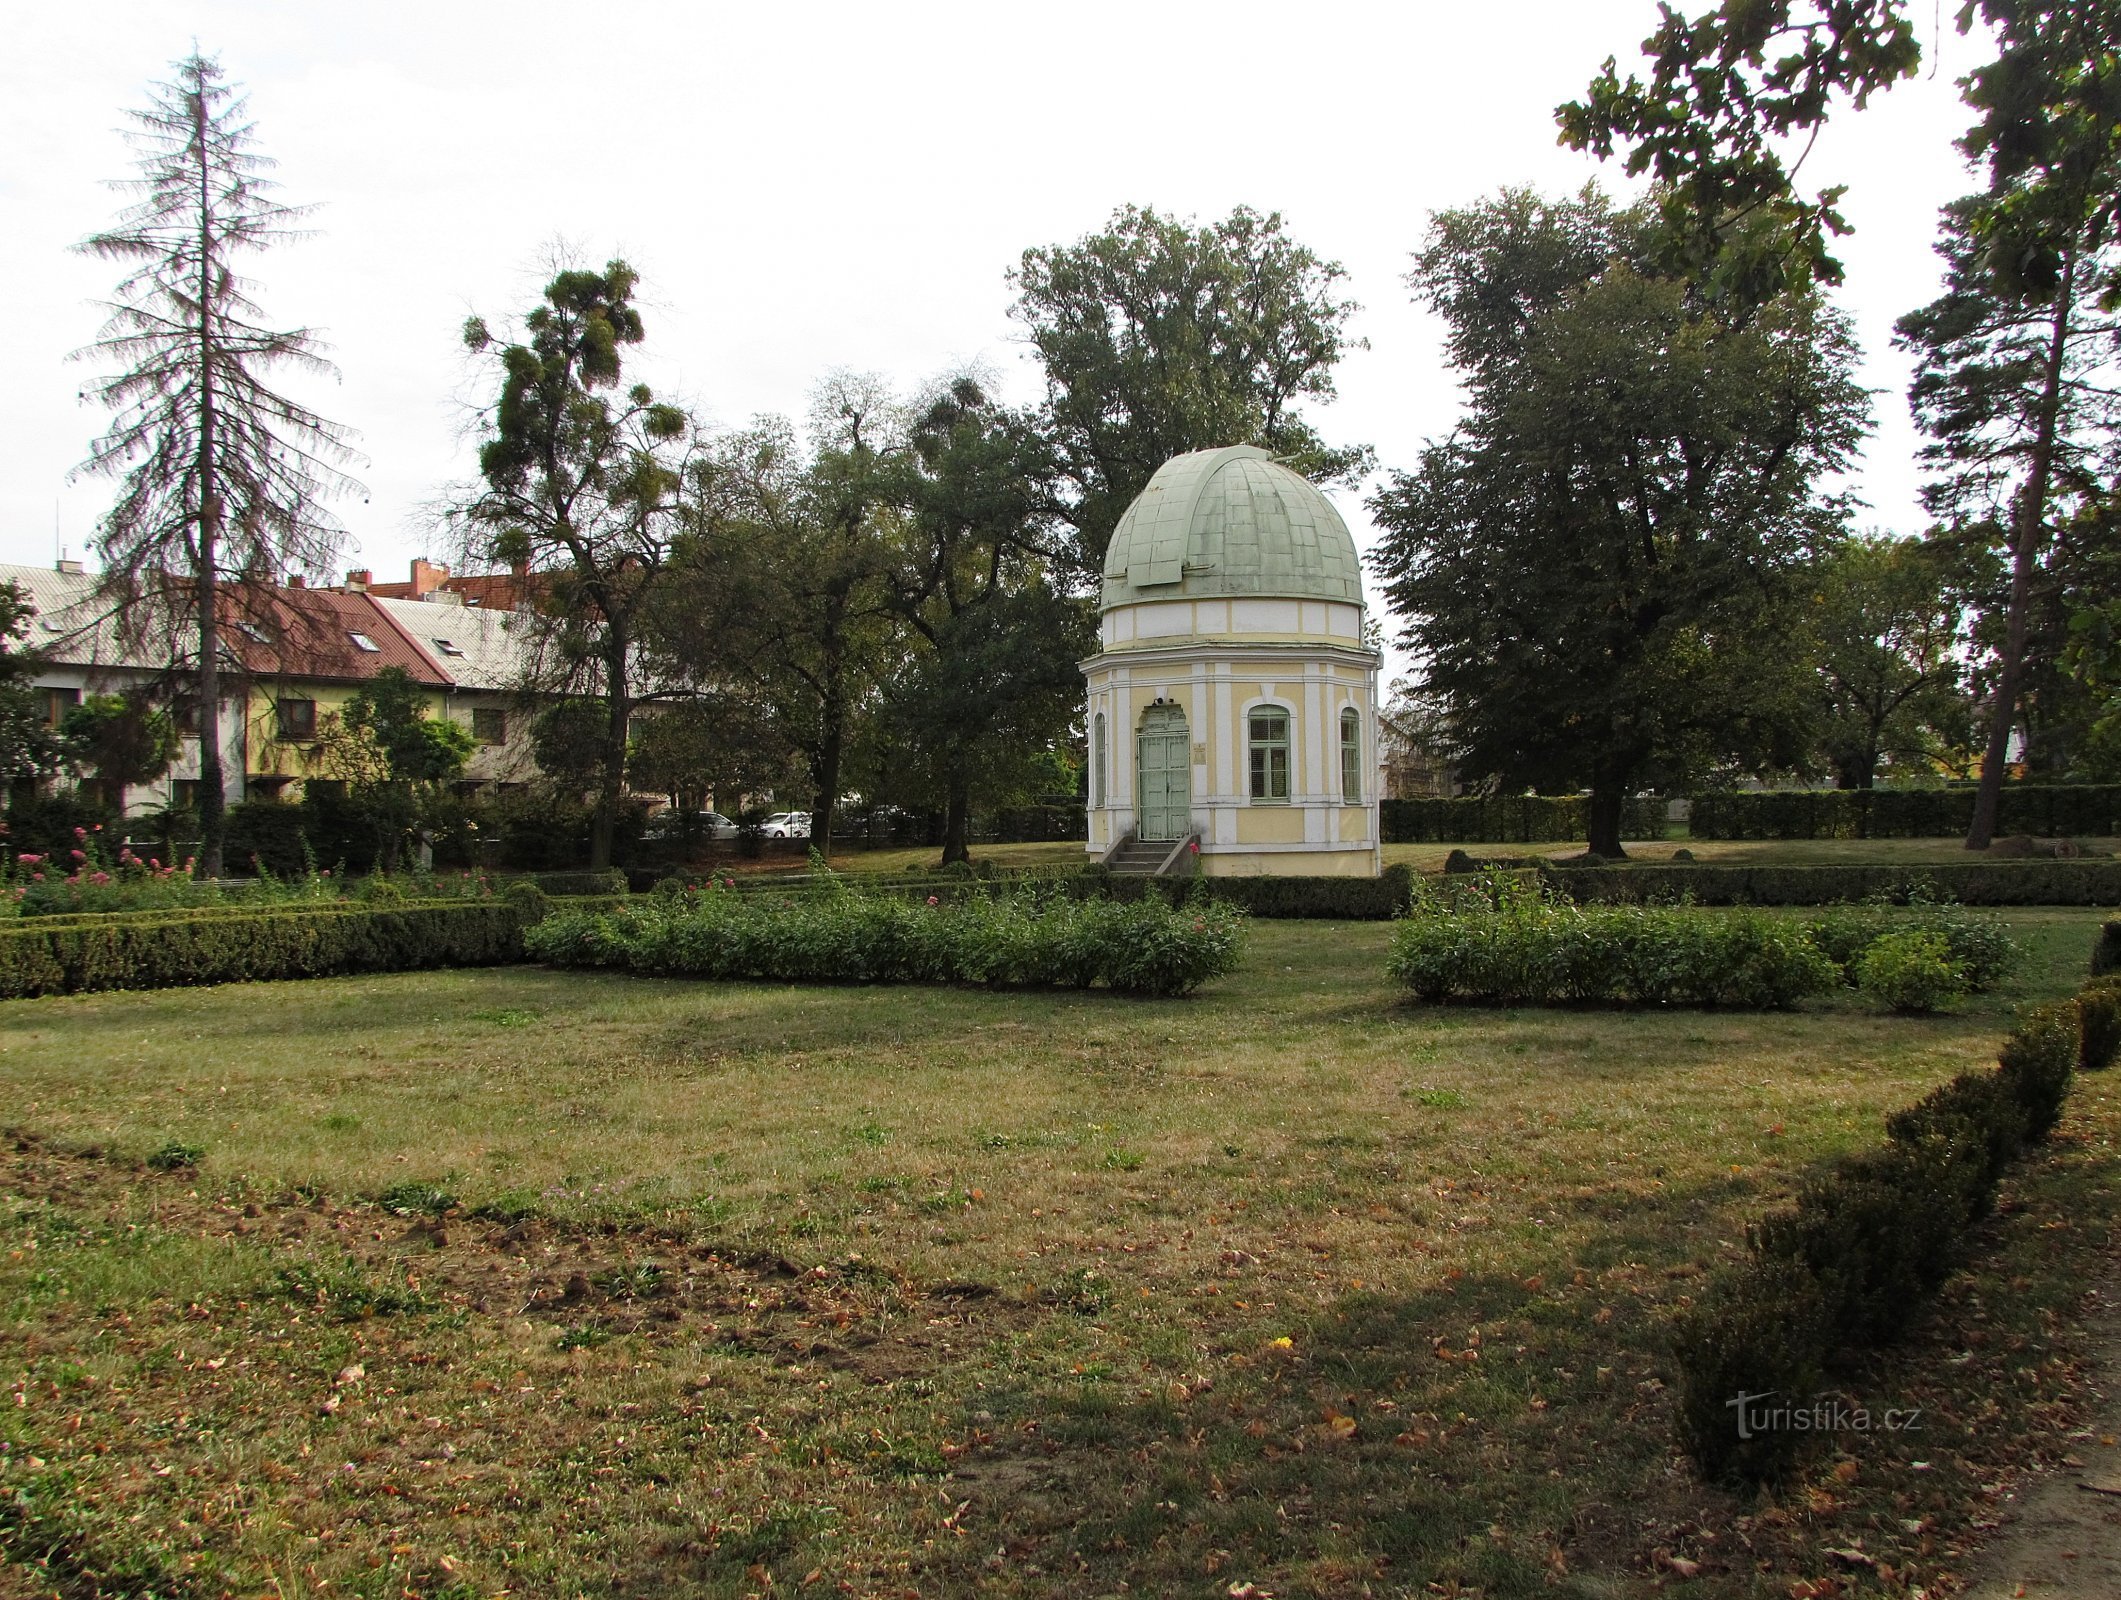 Holešov - monument till kompositören och observatoriet